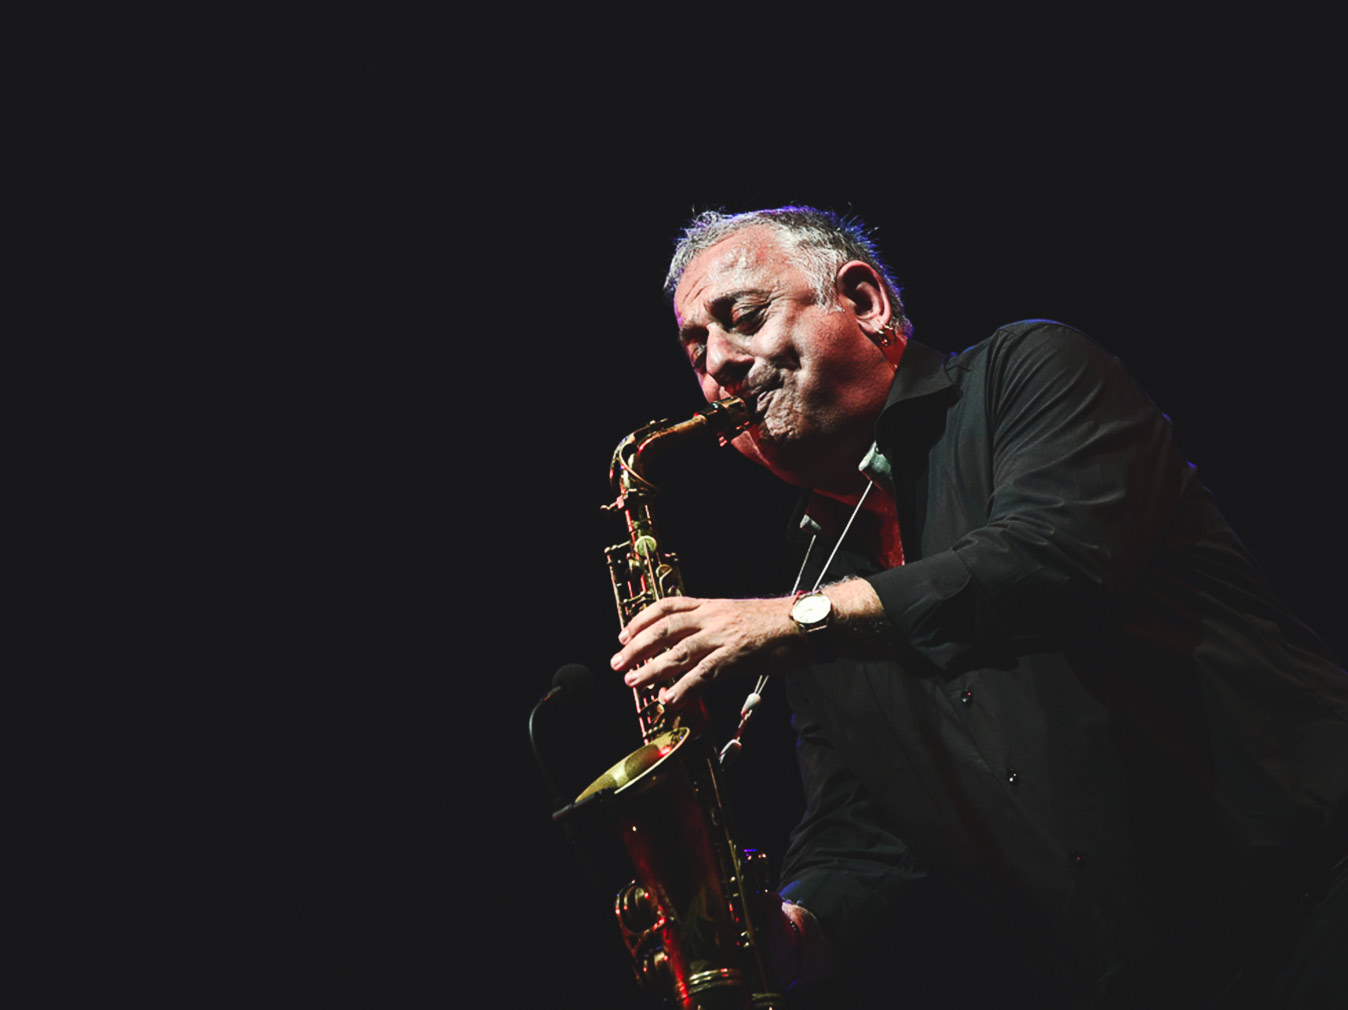 Pomigliano Jazz celebra l'International Jazz Day, concerto e presentazione del nuovo vinile di Marco Zurzolo